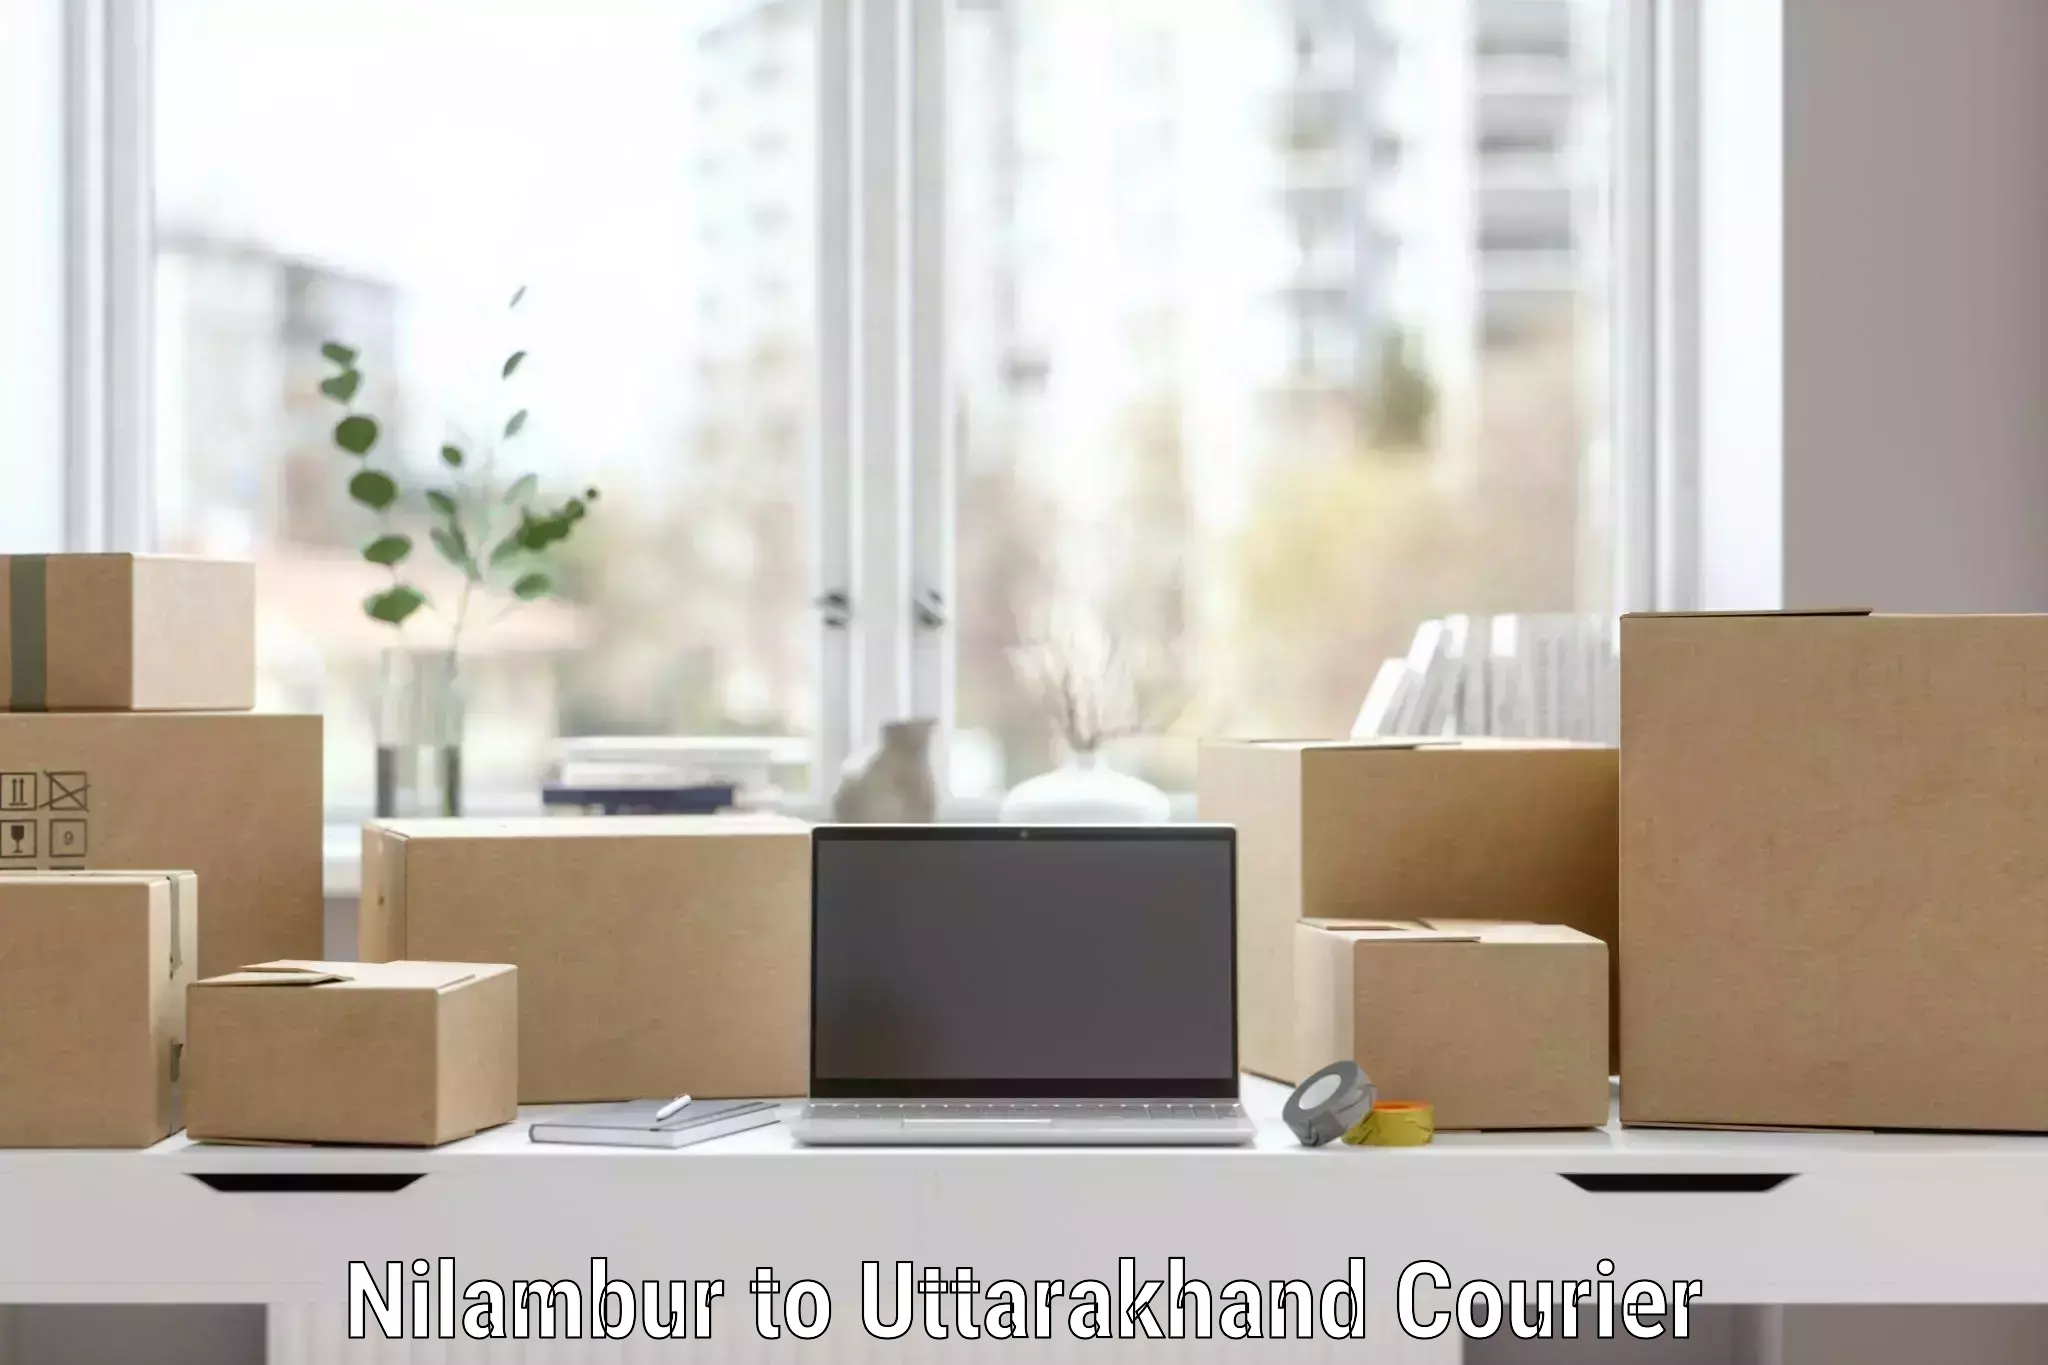 Furniture transport and logistics Nilambur to Rishikesh